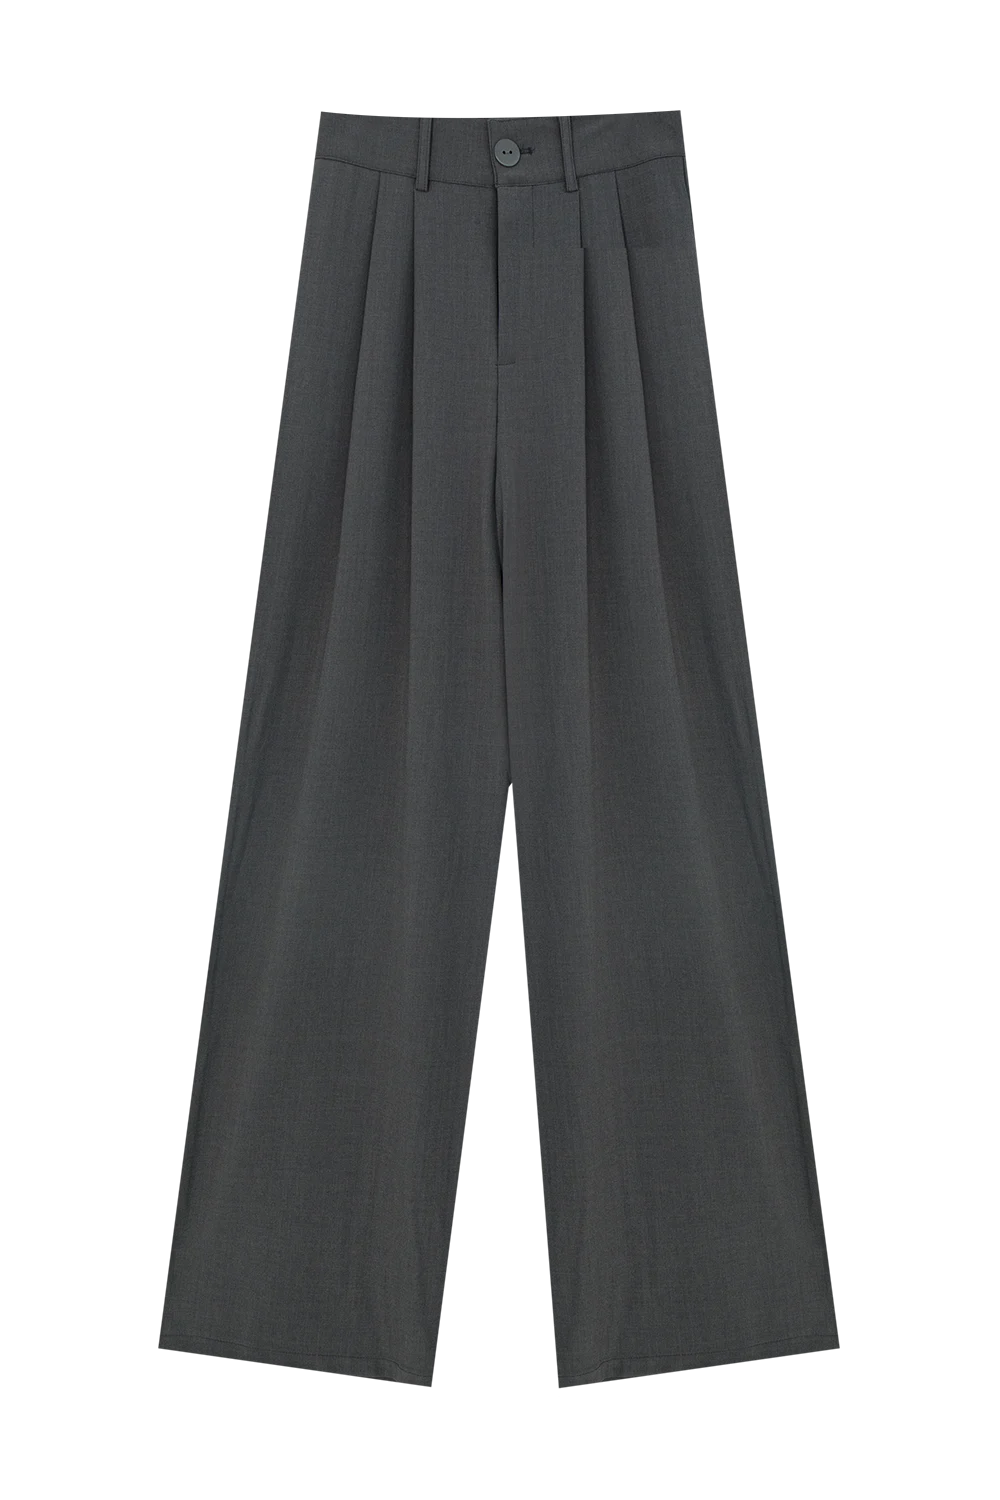 Pantalon large ajusté avec détails plissés